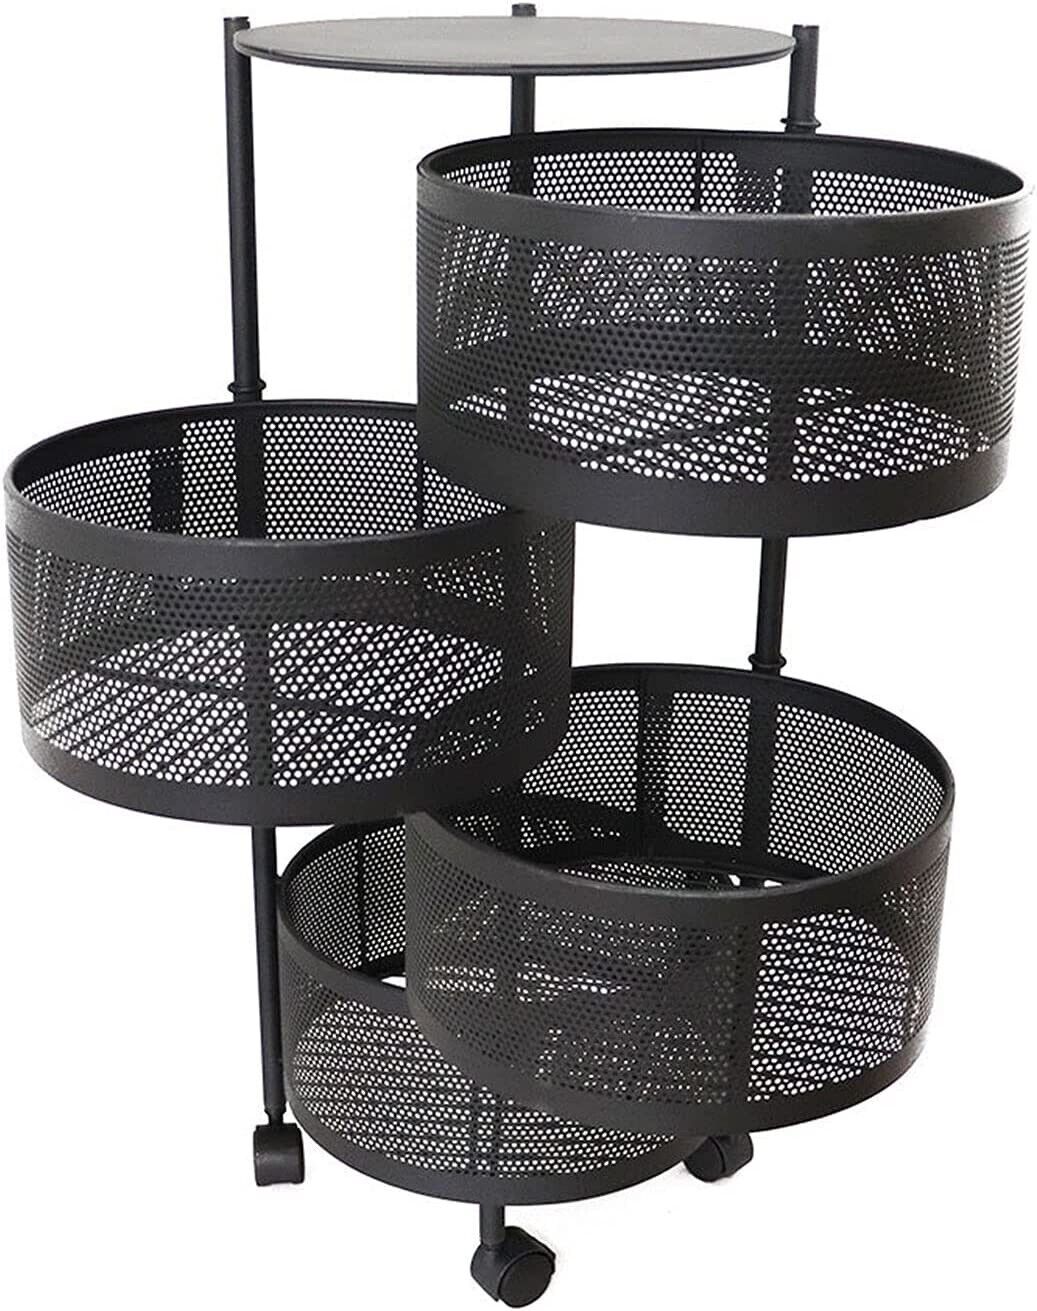 4 tier storage rack with wheels Kitchen Bathroom Storage Basket With Wheel  - STORAIZER